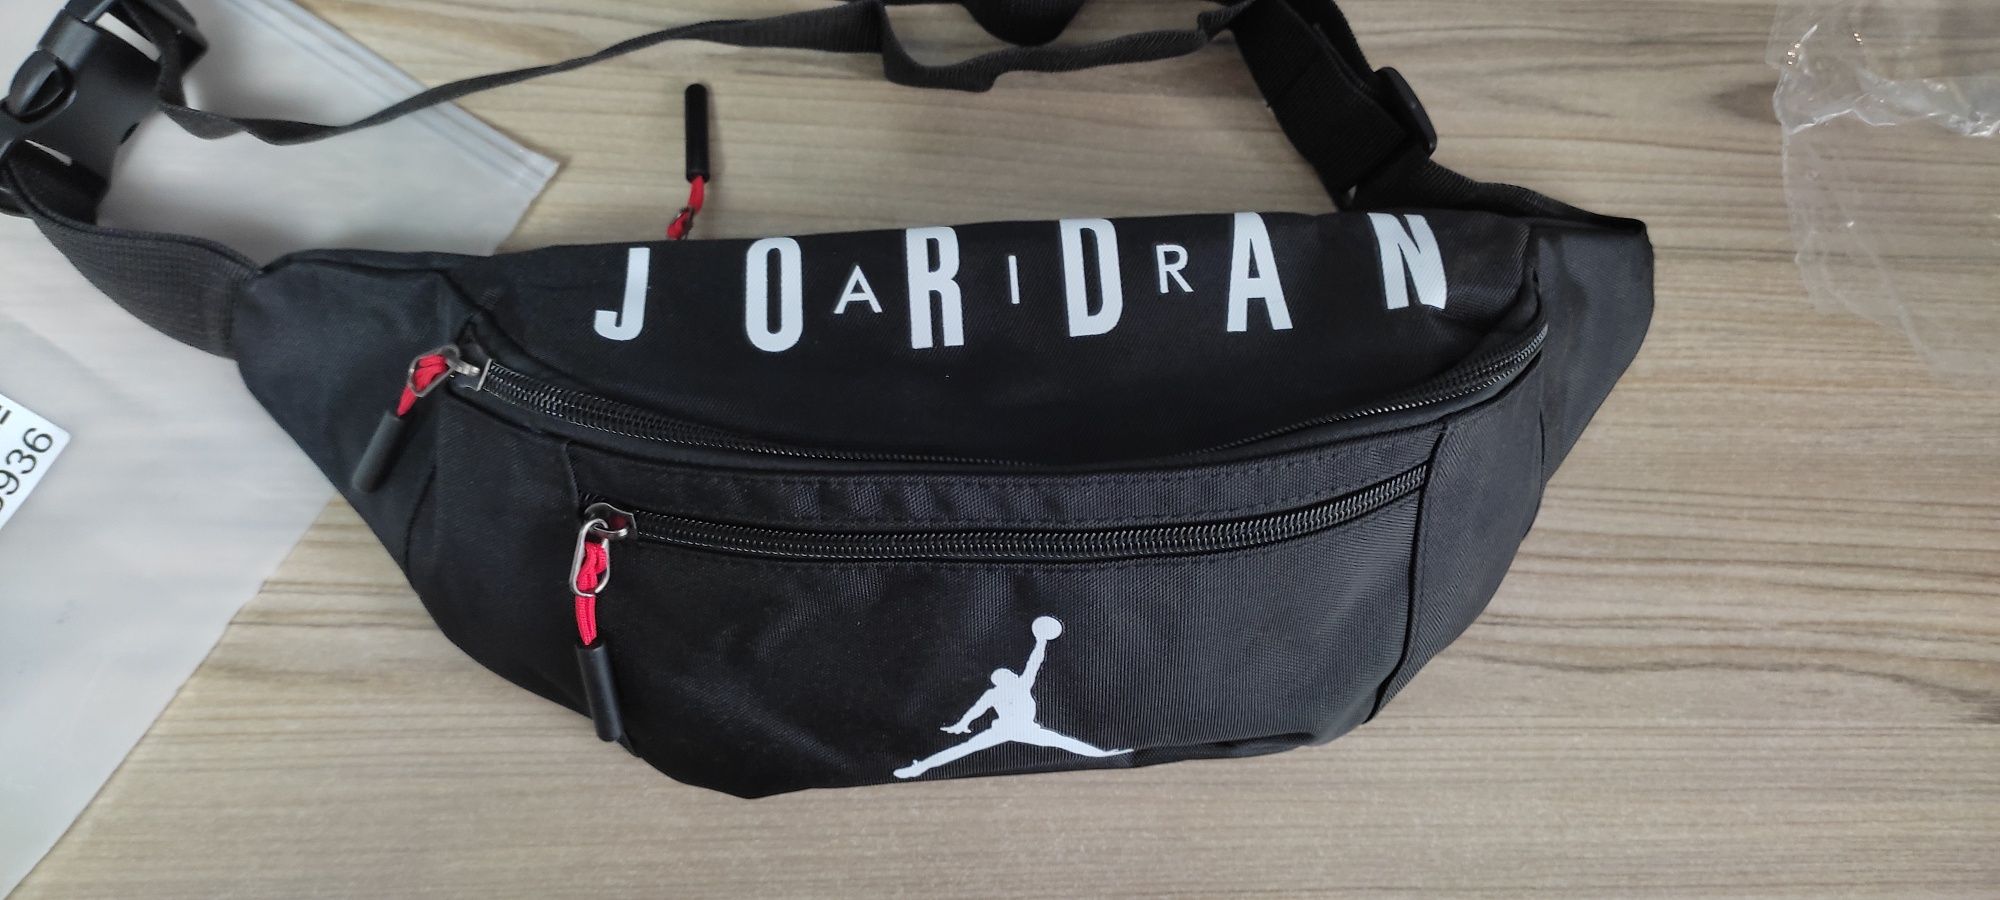 Мужская сумка Jordan. Новая